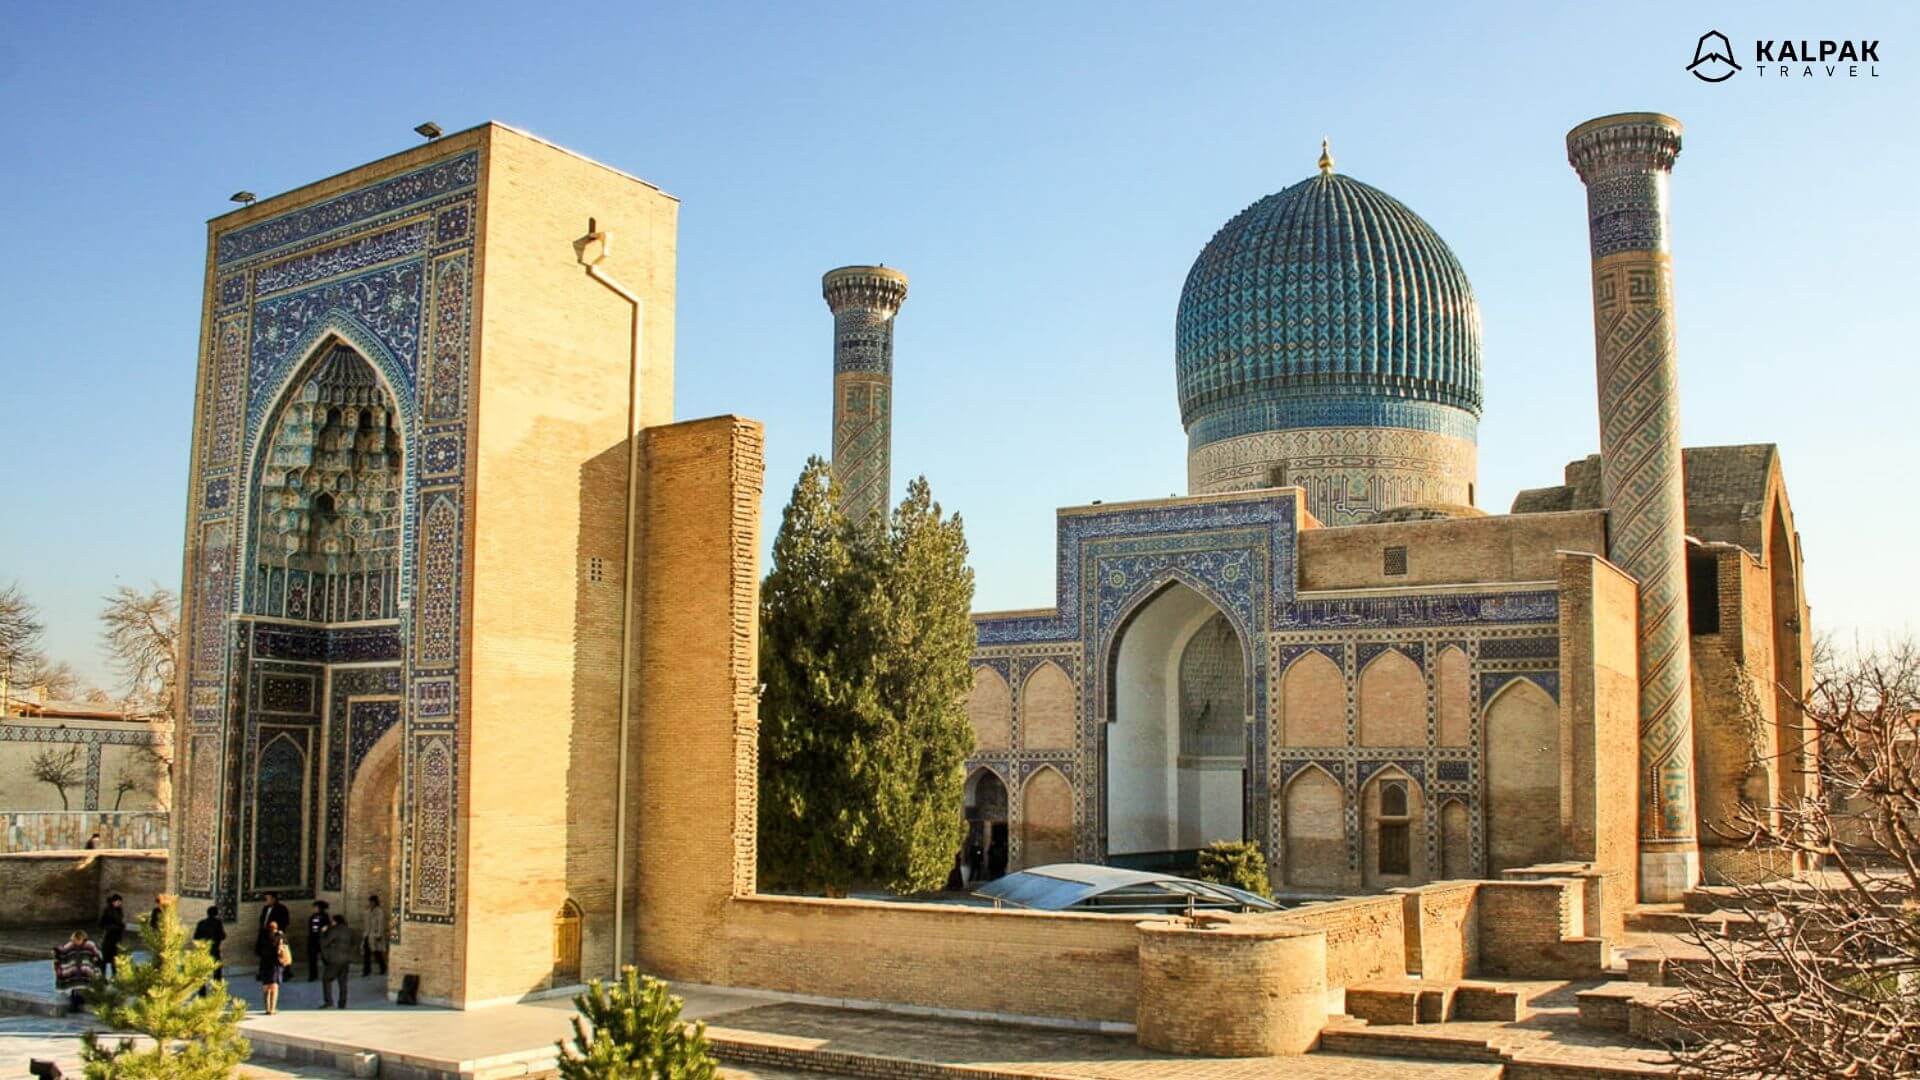 Gur Emir of Tamerlane in Samarkand